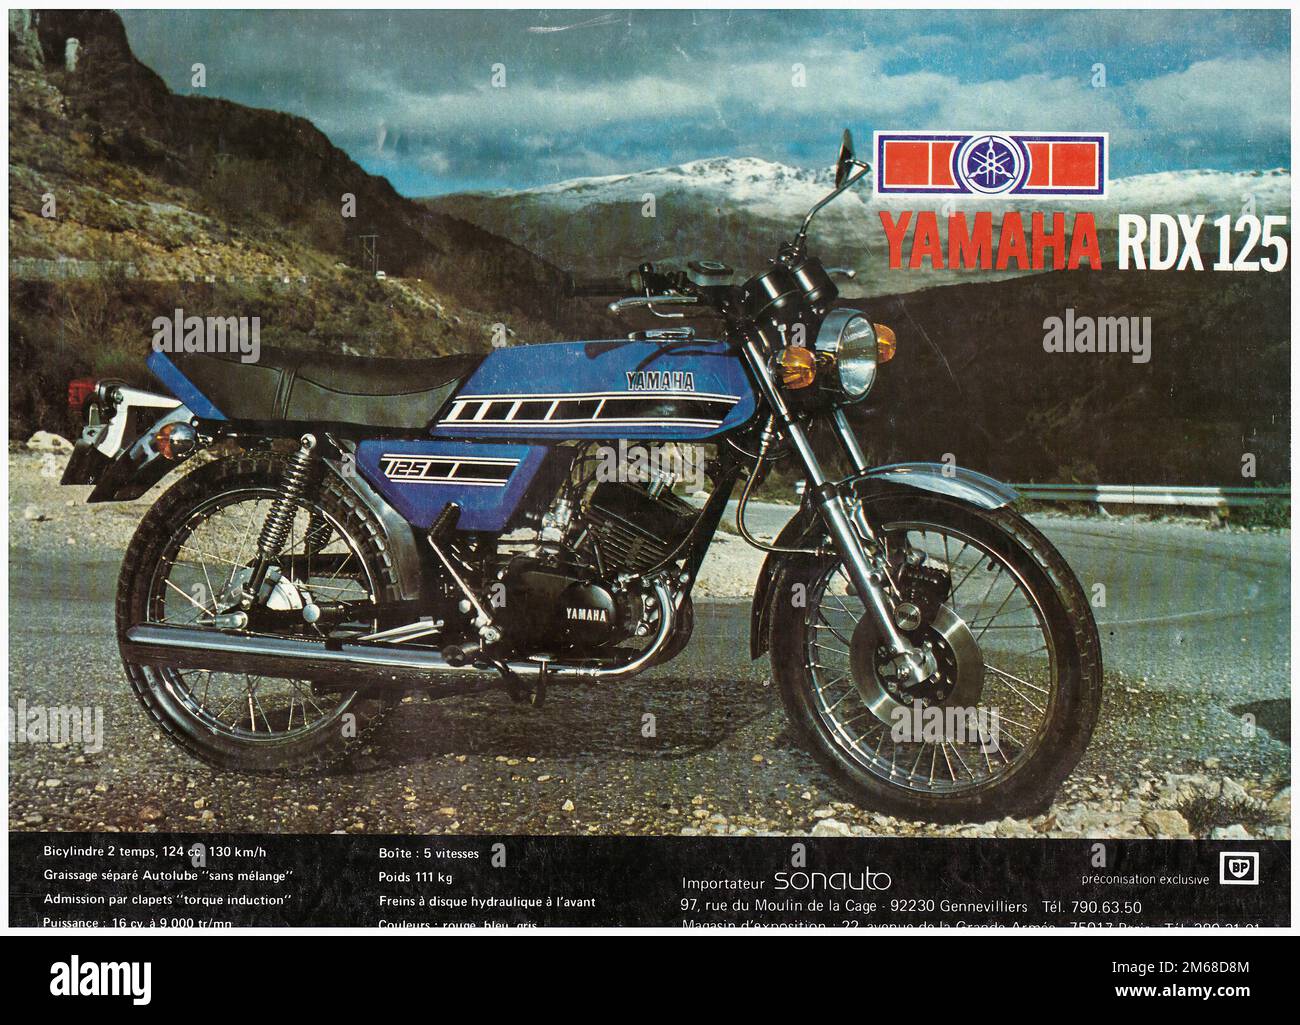 YAMAHA RDX 125 - Publicité de moto ancienne Photo Stock - Alamy